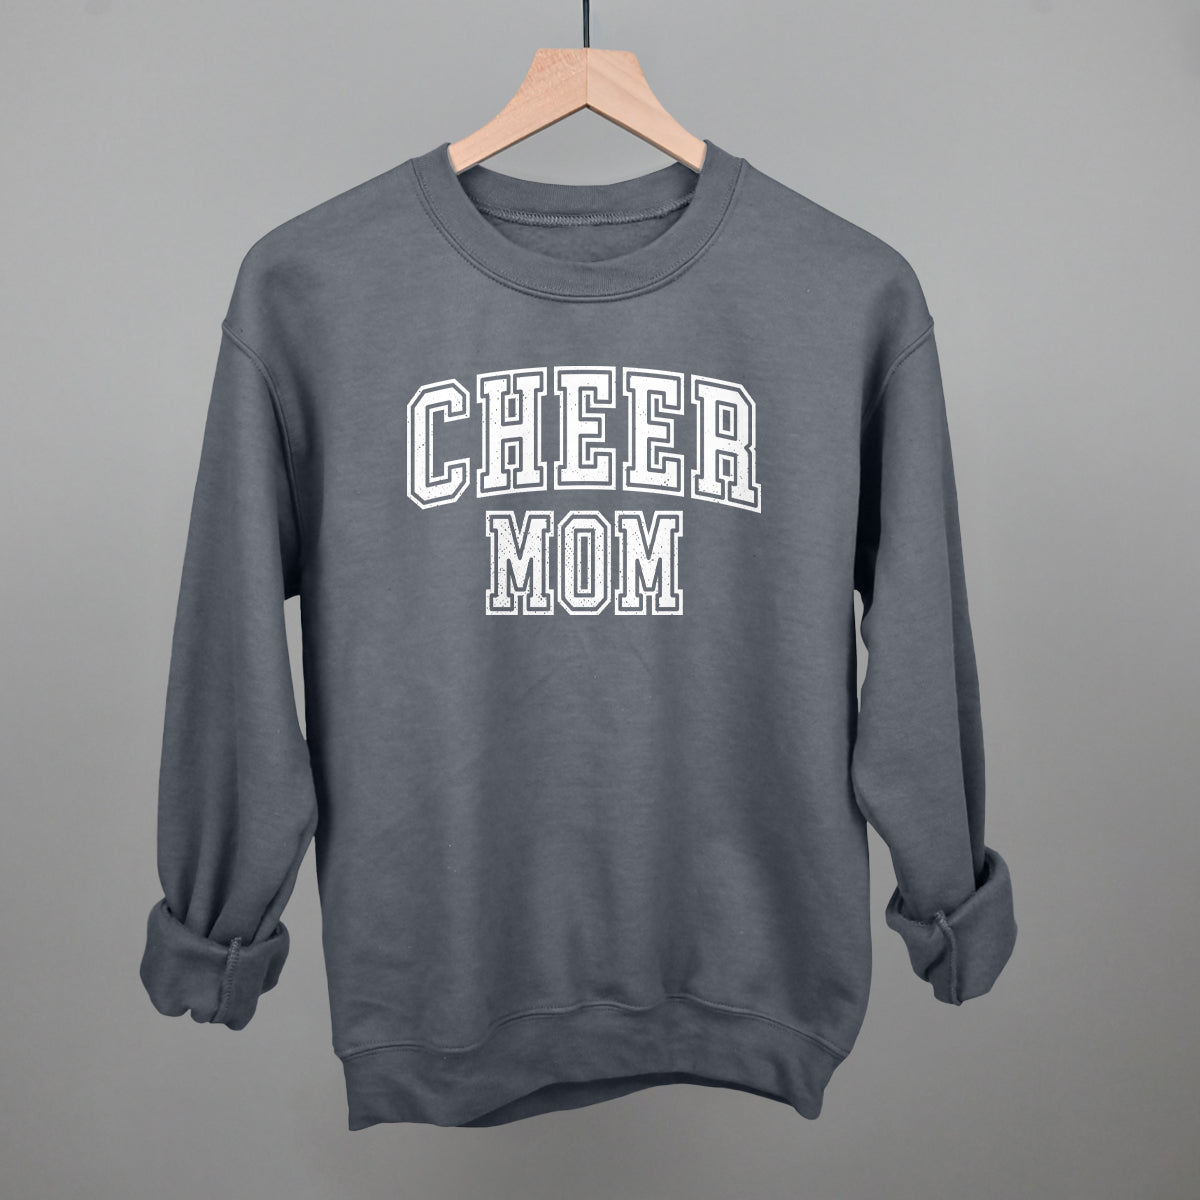 Cheer Mom Collegiate